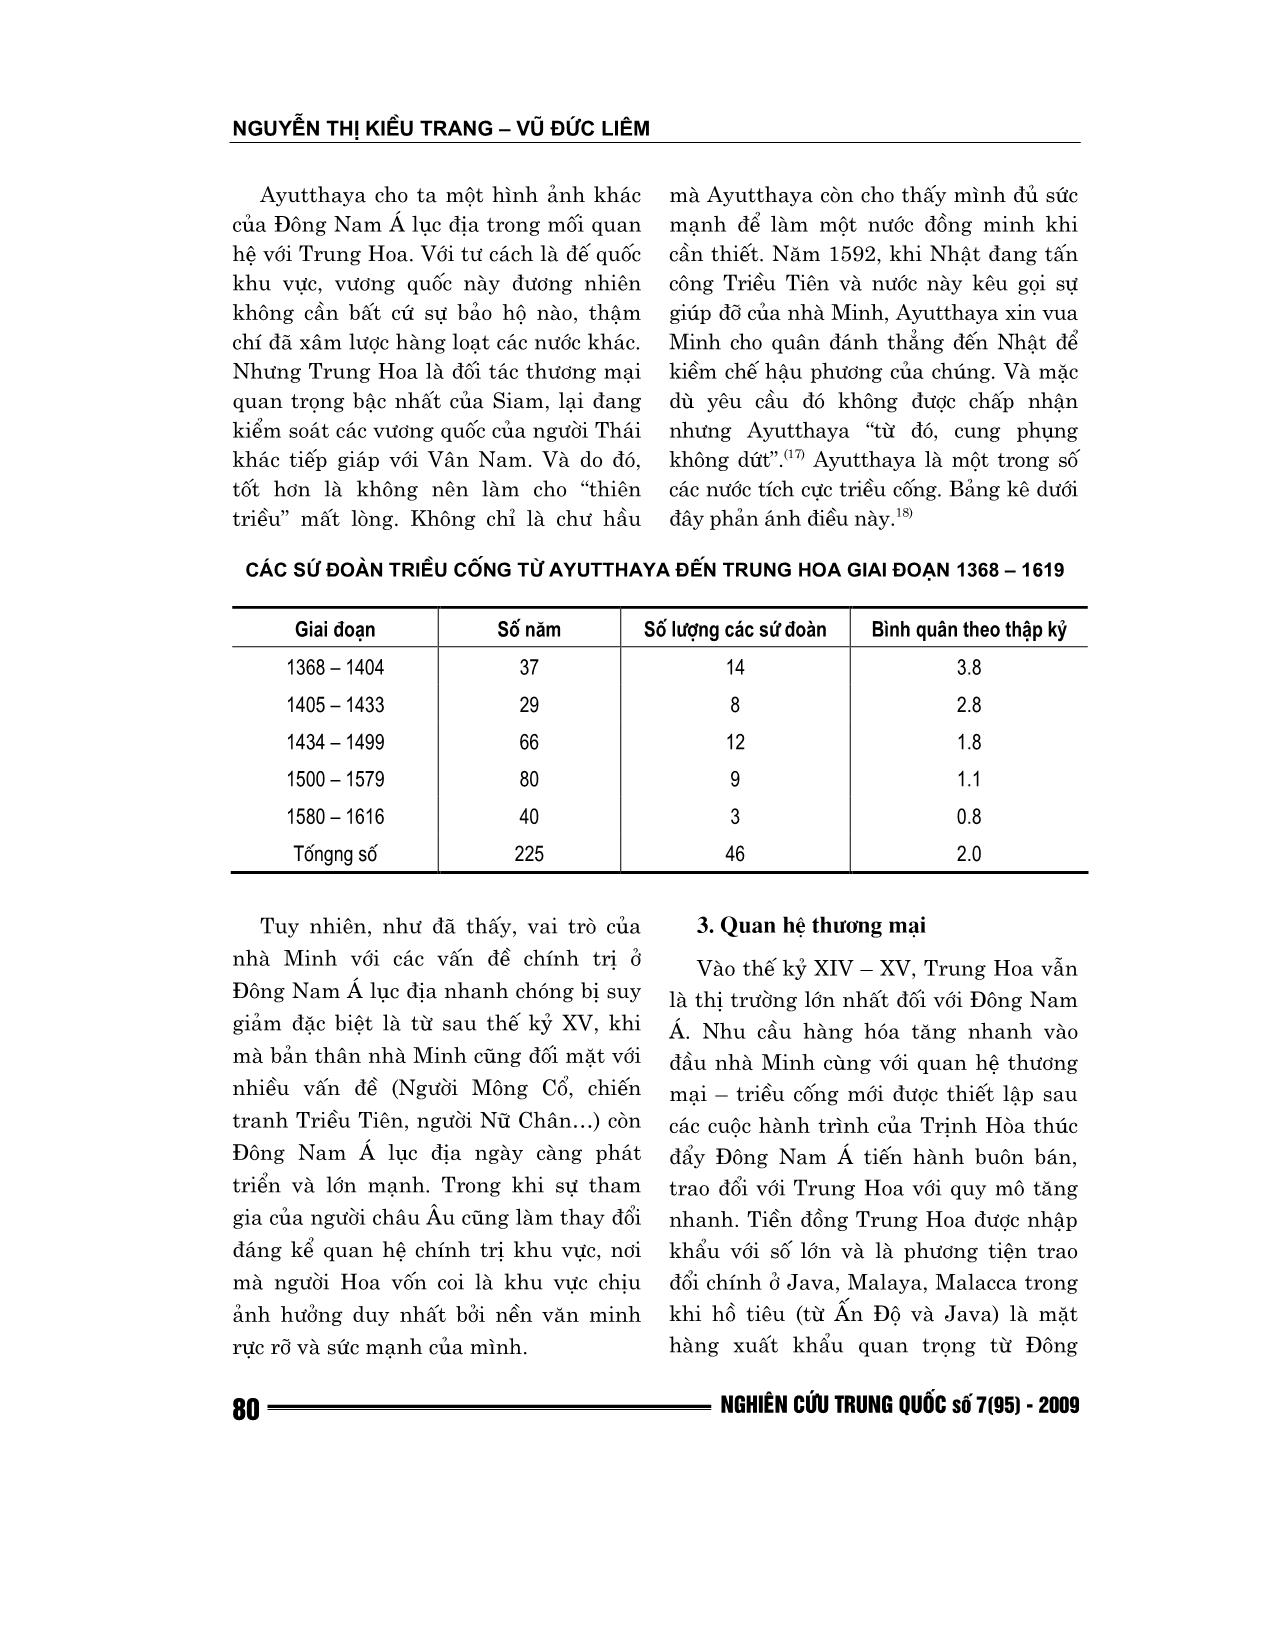 Một số vấn đề trong quan hệ giữa các nước Đông Nam Á lục địa với Trung Hoa (Thời Minh) trang 7